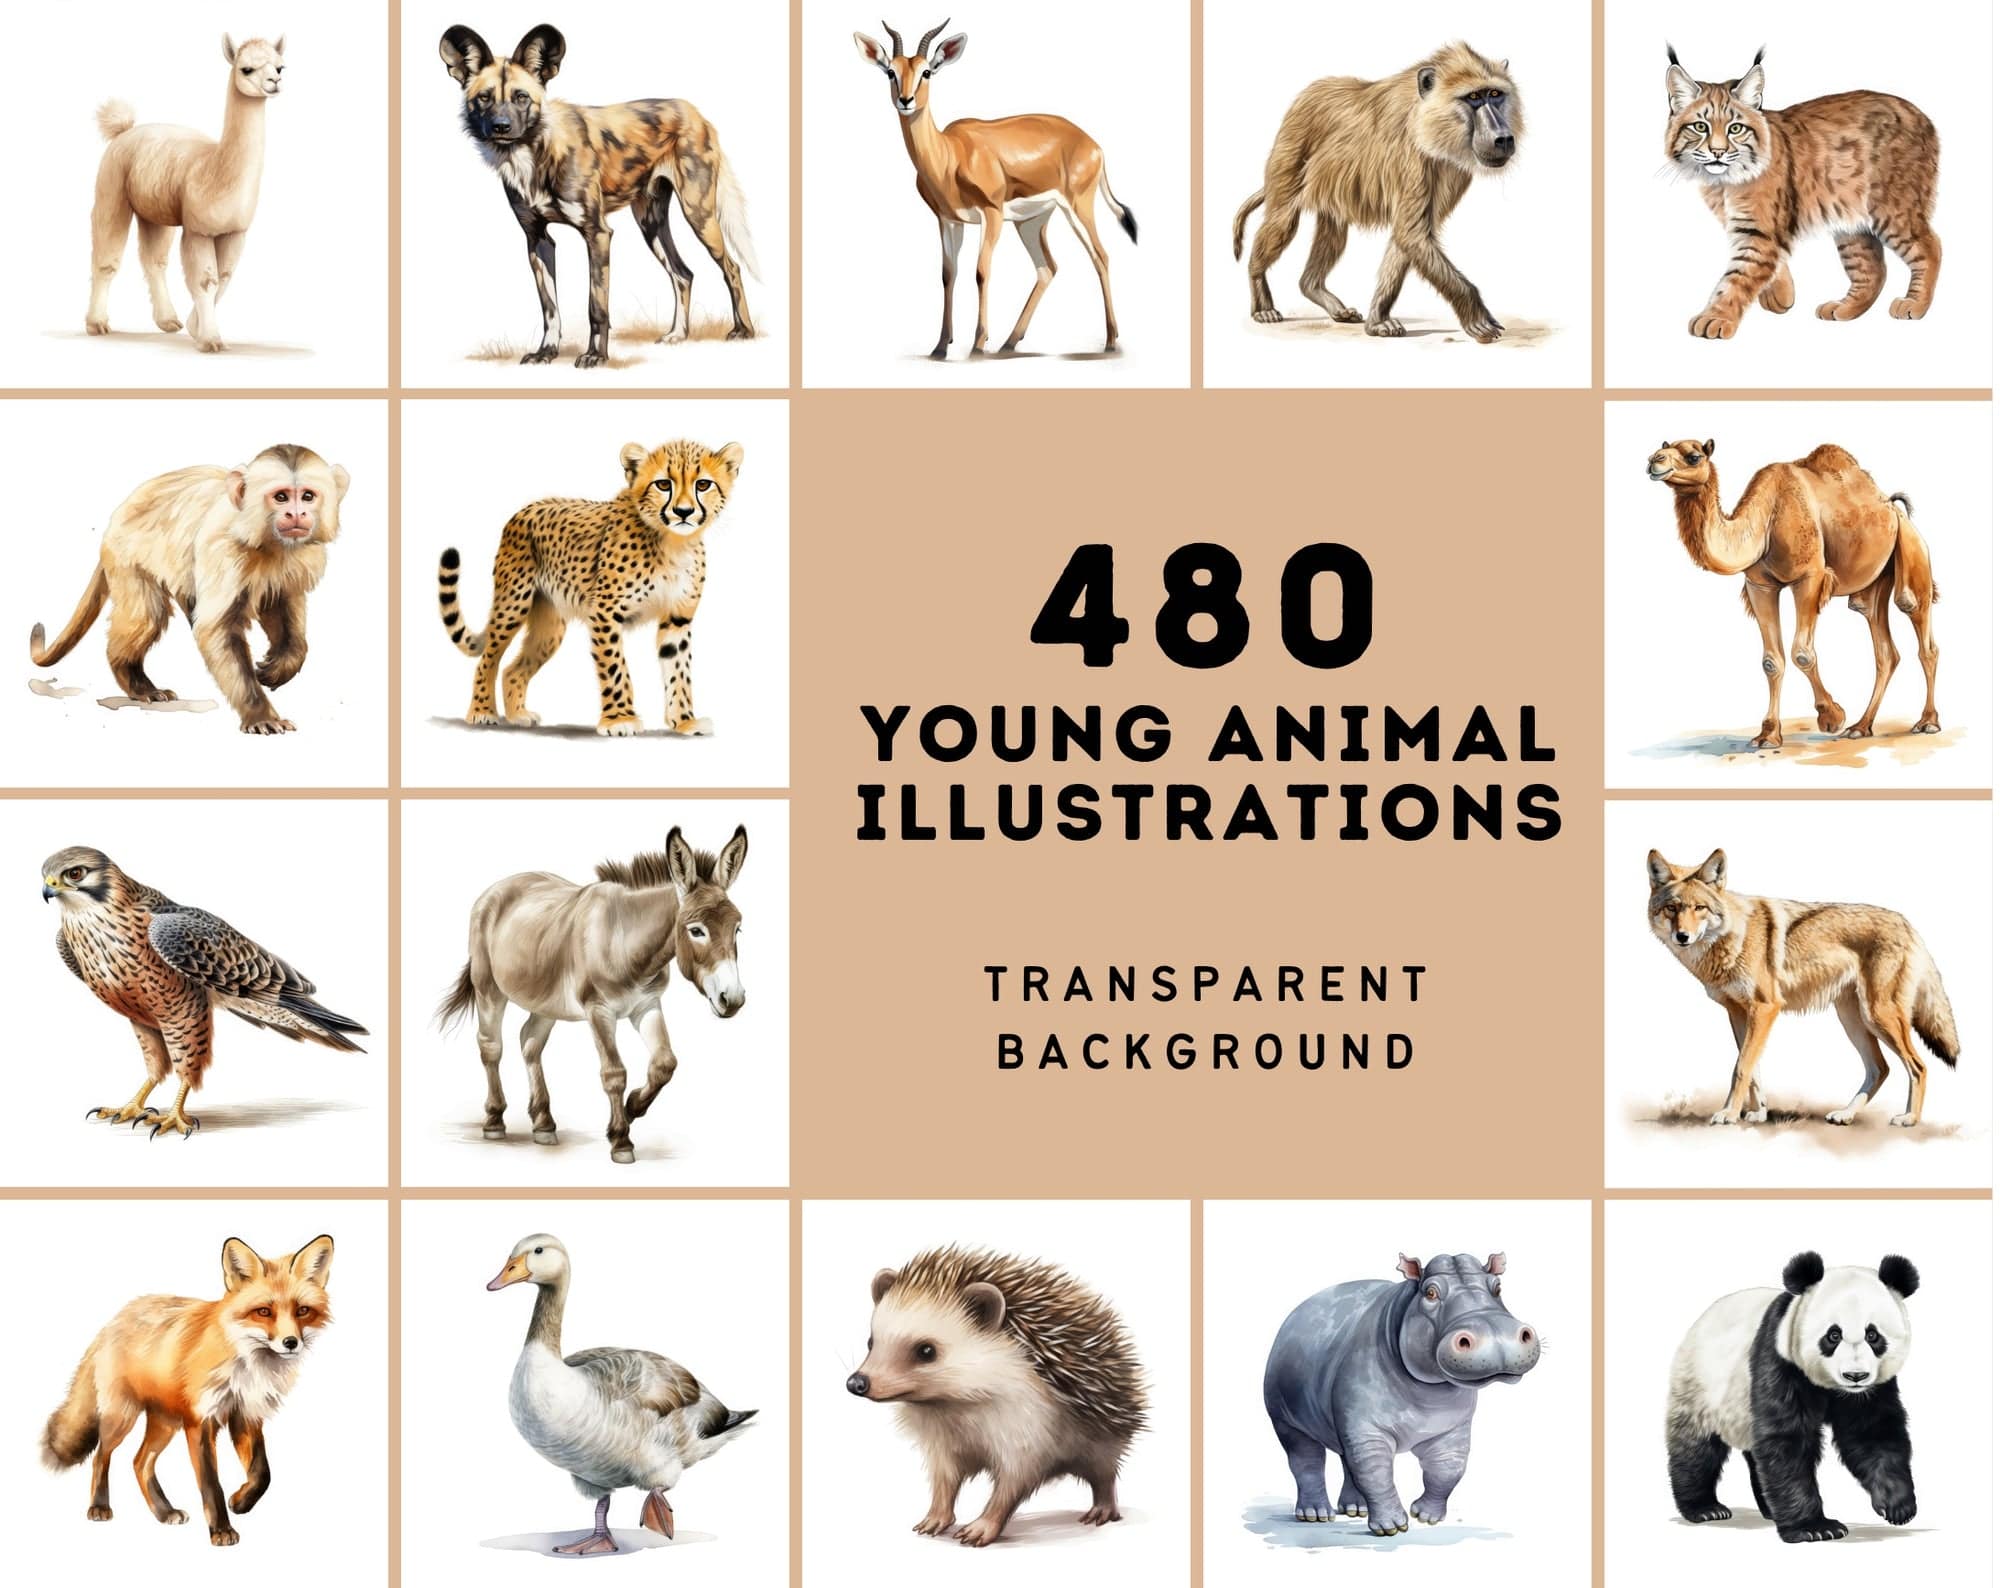 Mega Bundle: 480 Adorable Young Animal Illustrations, Transparent Background - Perfect for Crafts & Design Digital Download Sumobundle